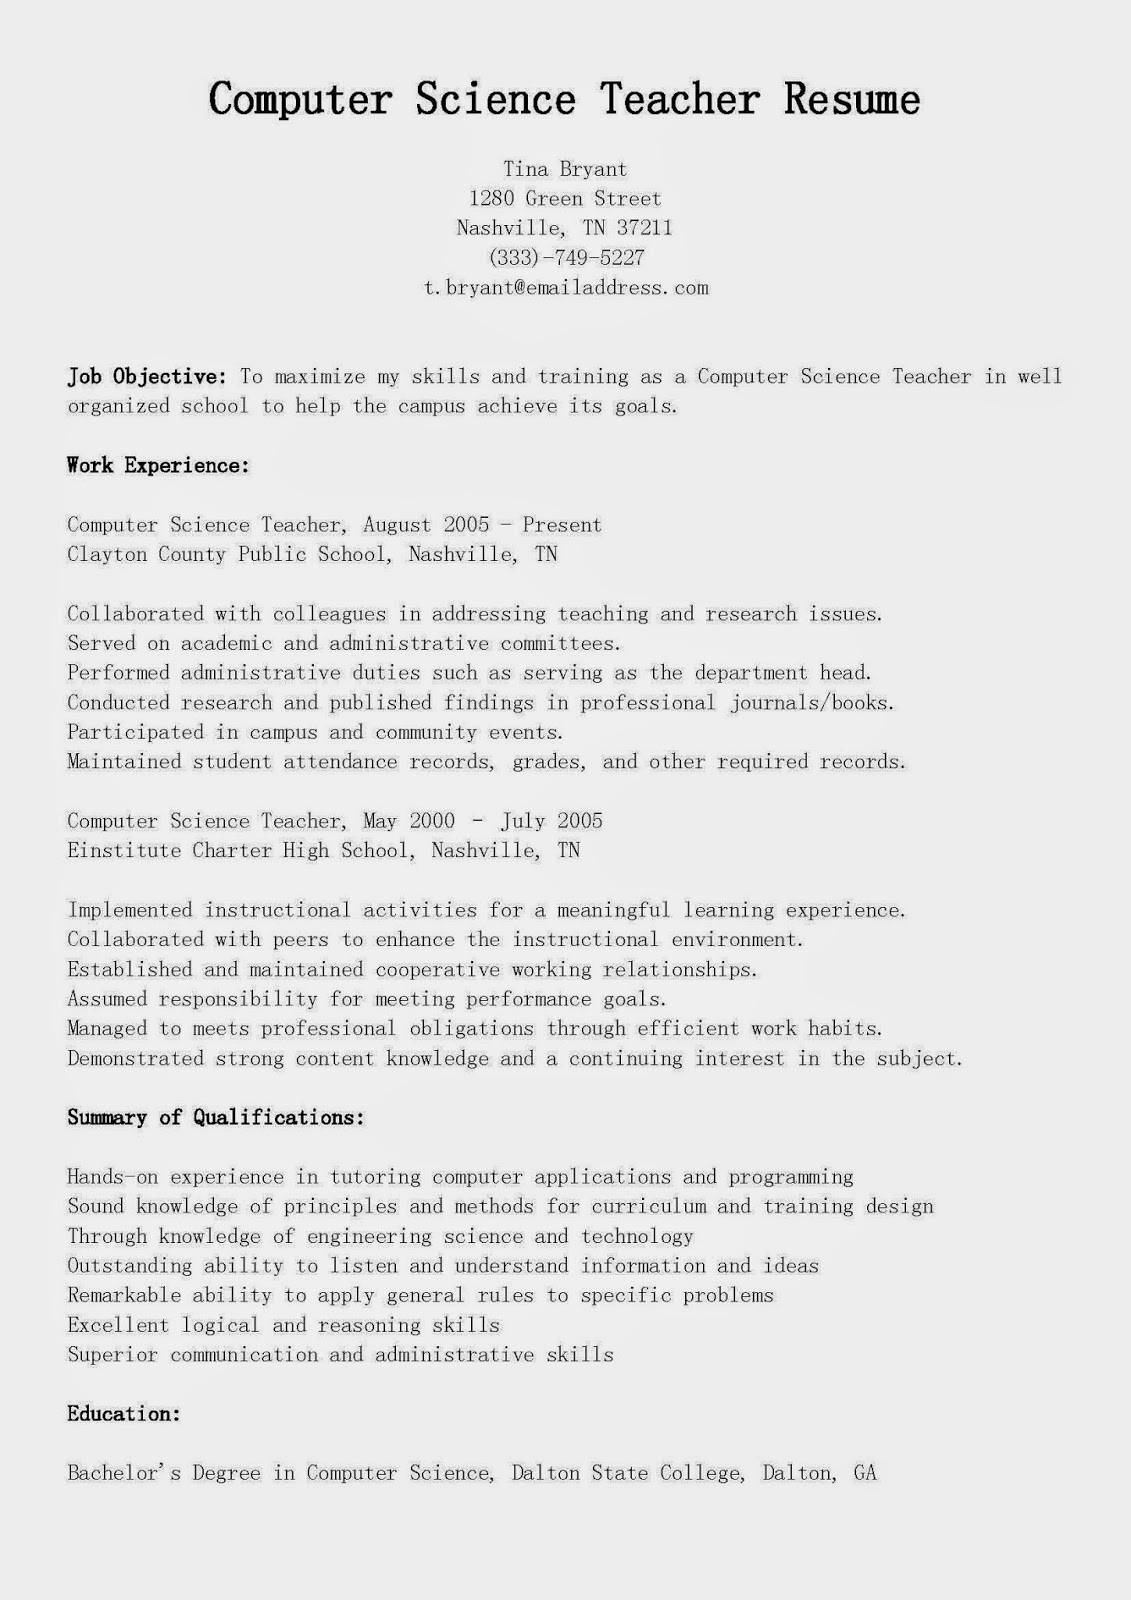 Sample resume format lecturer computer science